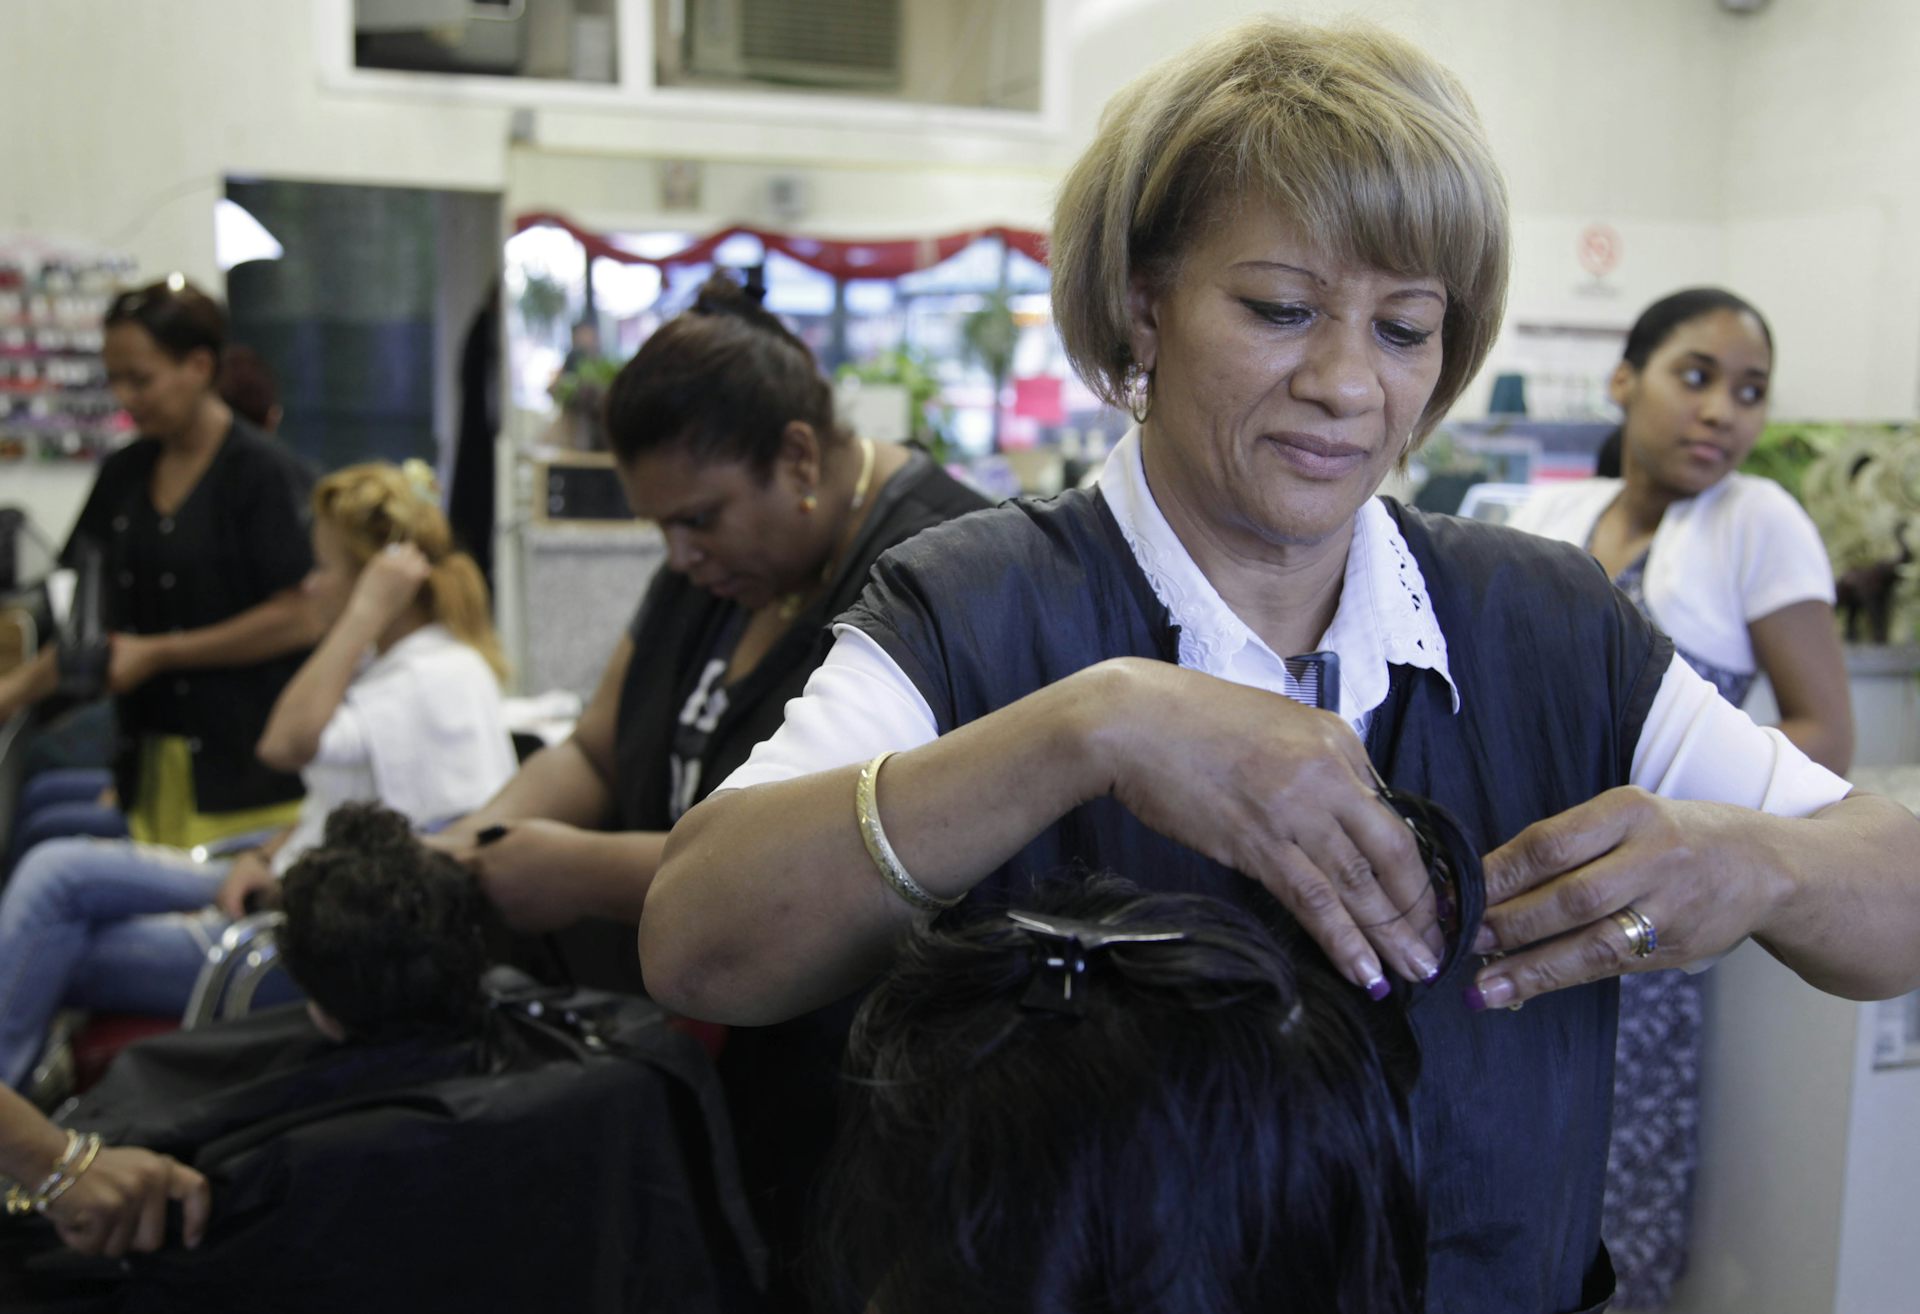 Latin Hottie at The Hair Salon